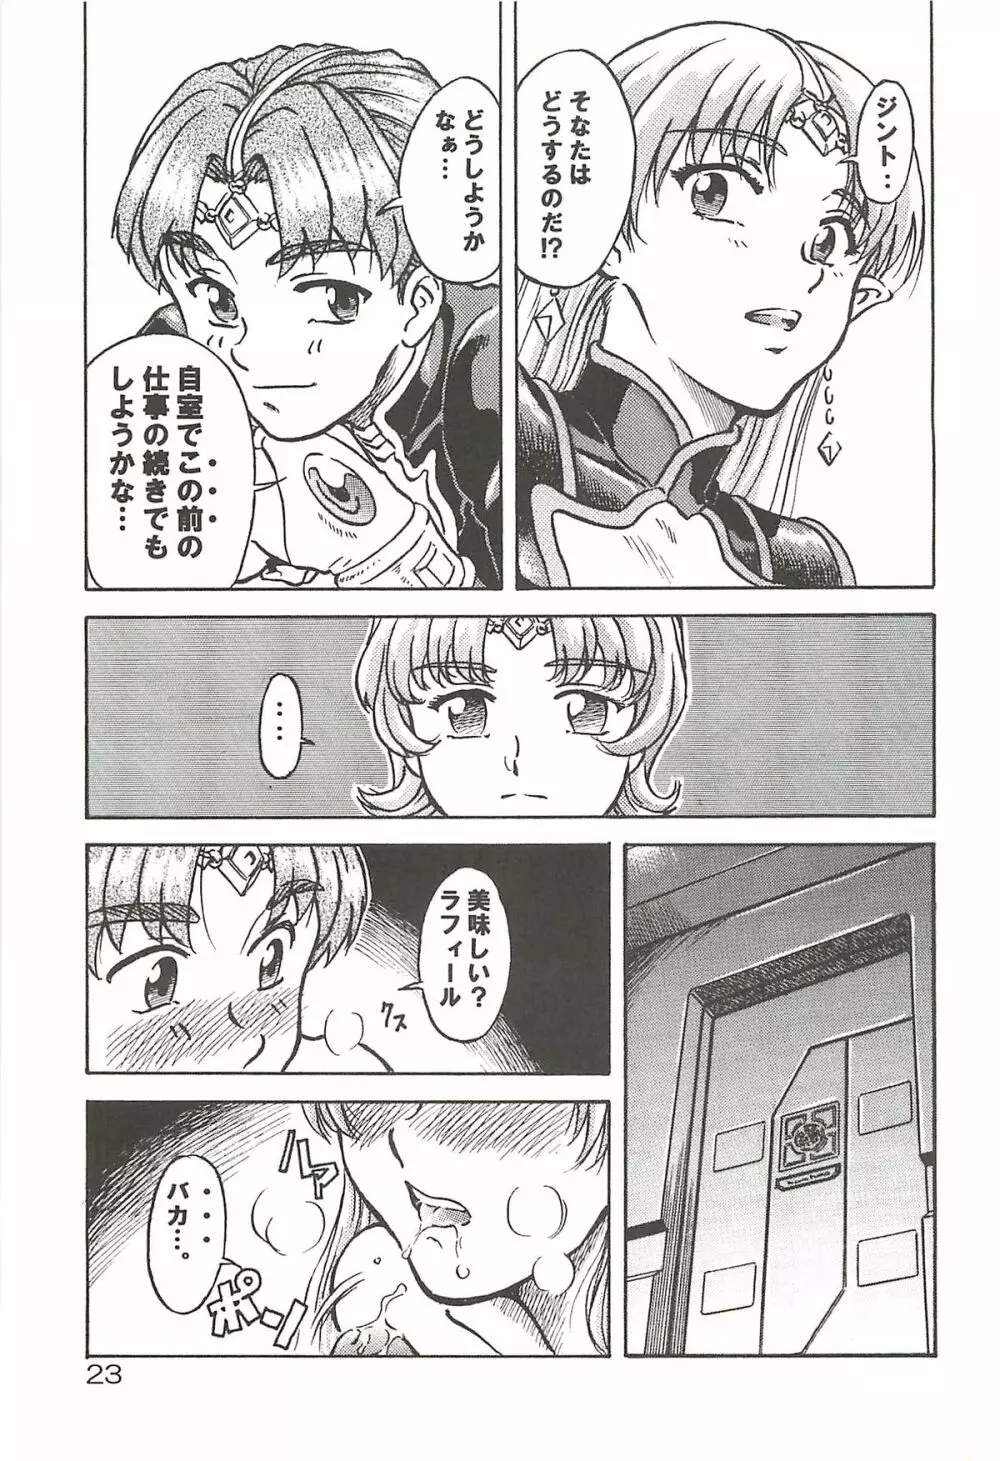 追放覚悟 Special edition Phase1 - page22